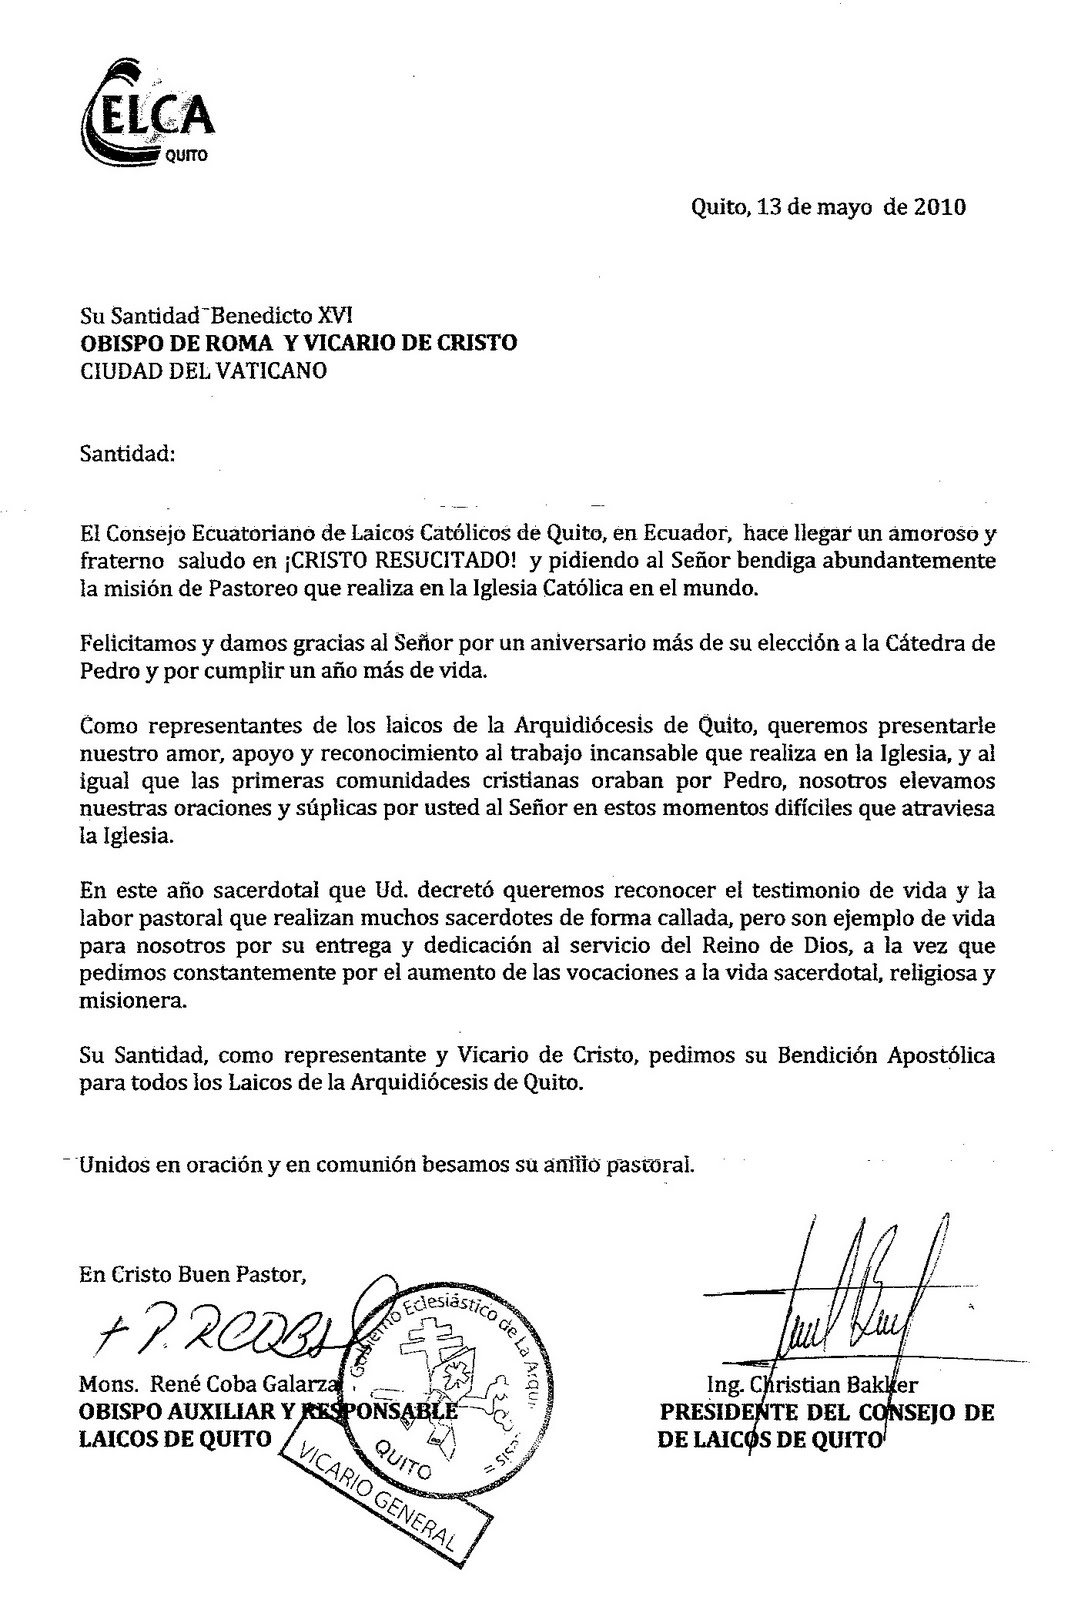 EQUIPOS DE NUESTRA SEÑORA - REGIÓN ECUADOR SUR: Publicamos la Carta que  CELCA- Consejo Ecuatoriano de Laicos Católicos, le envió a su Santidad  Benedicto XVI (hacer click sobre la imagen)